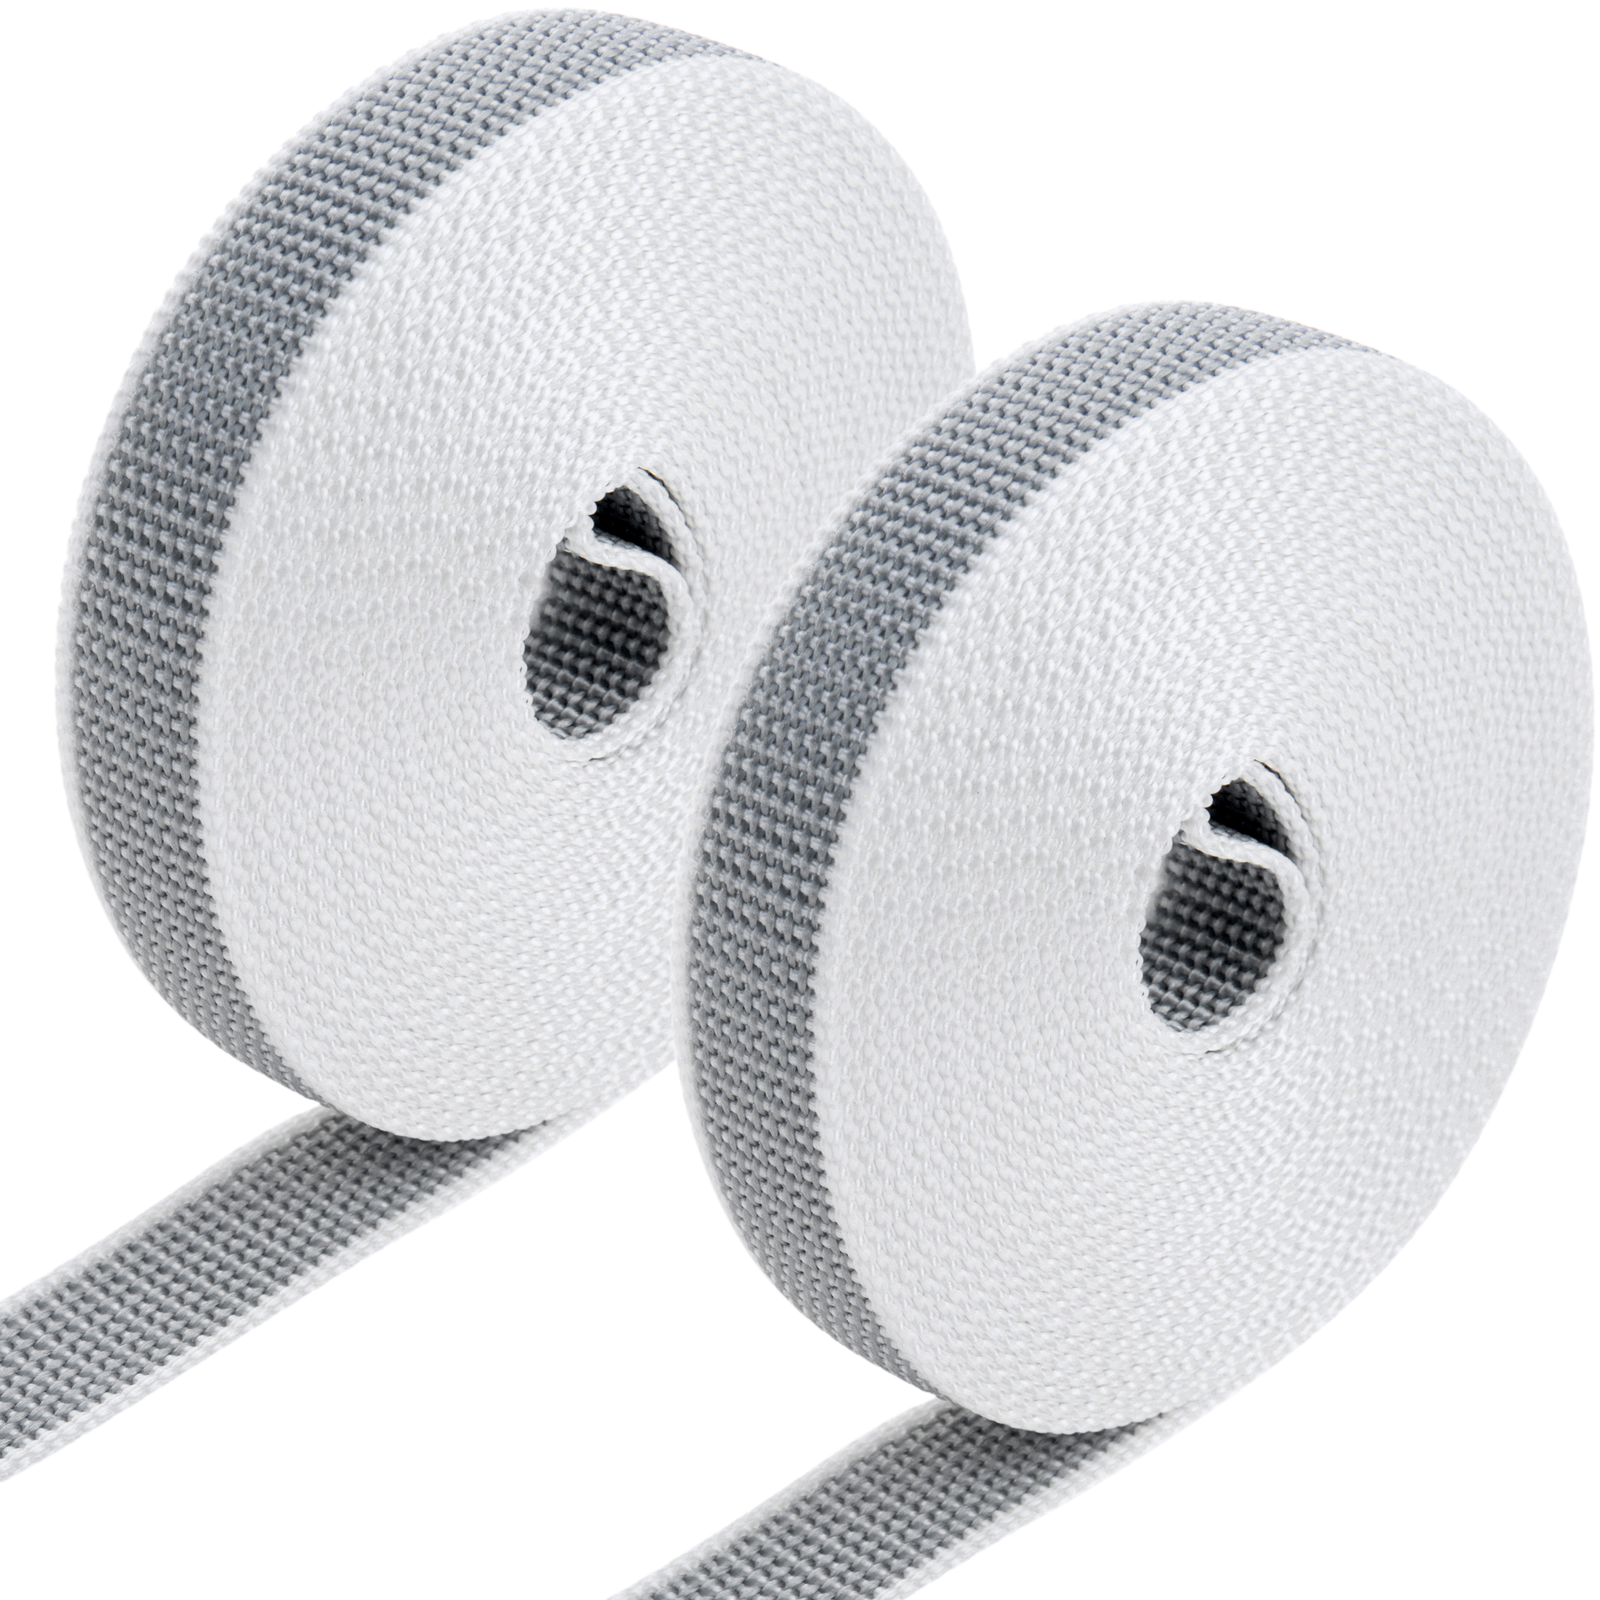 Pack de 2 unidades cinta para persiana de nailon blanca y negra de 18mm x  6m - Hiper Electrón